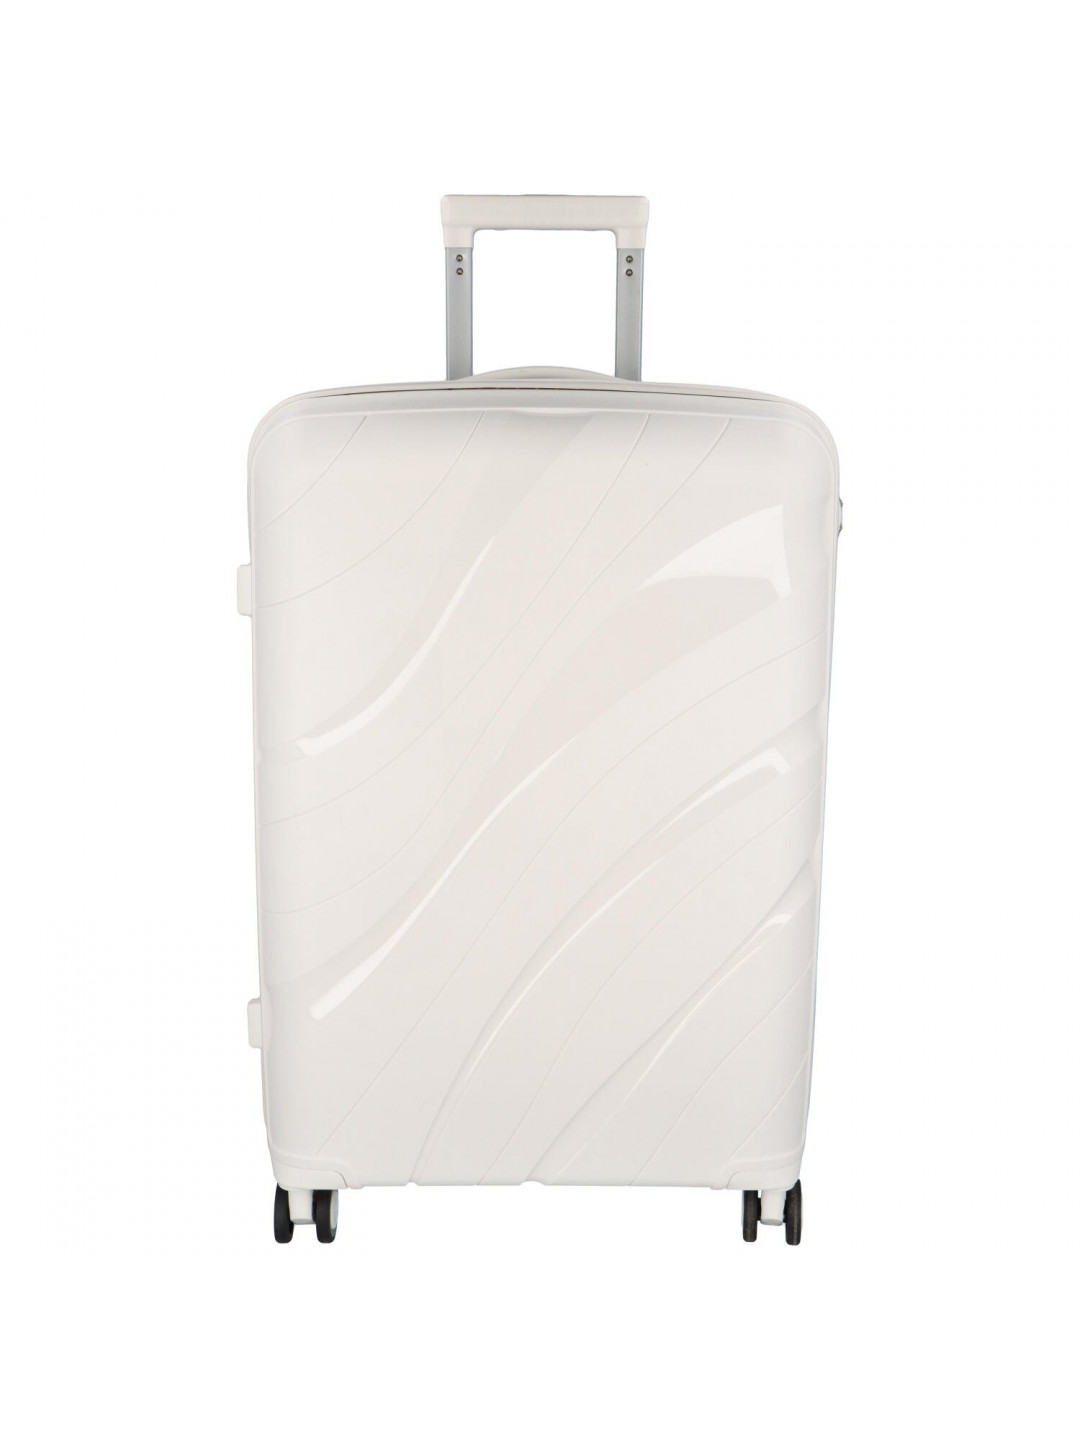 Cestovní plastový kufr Voyex velikosti S bílý